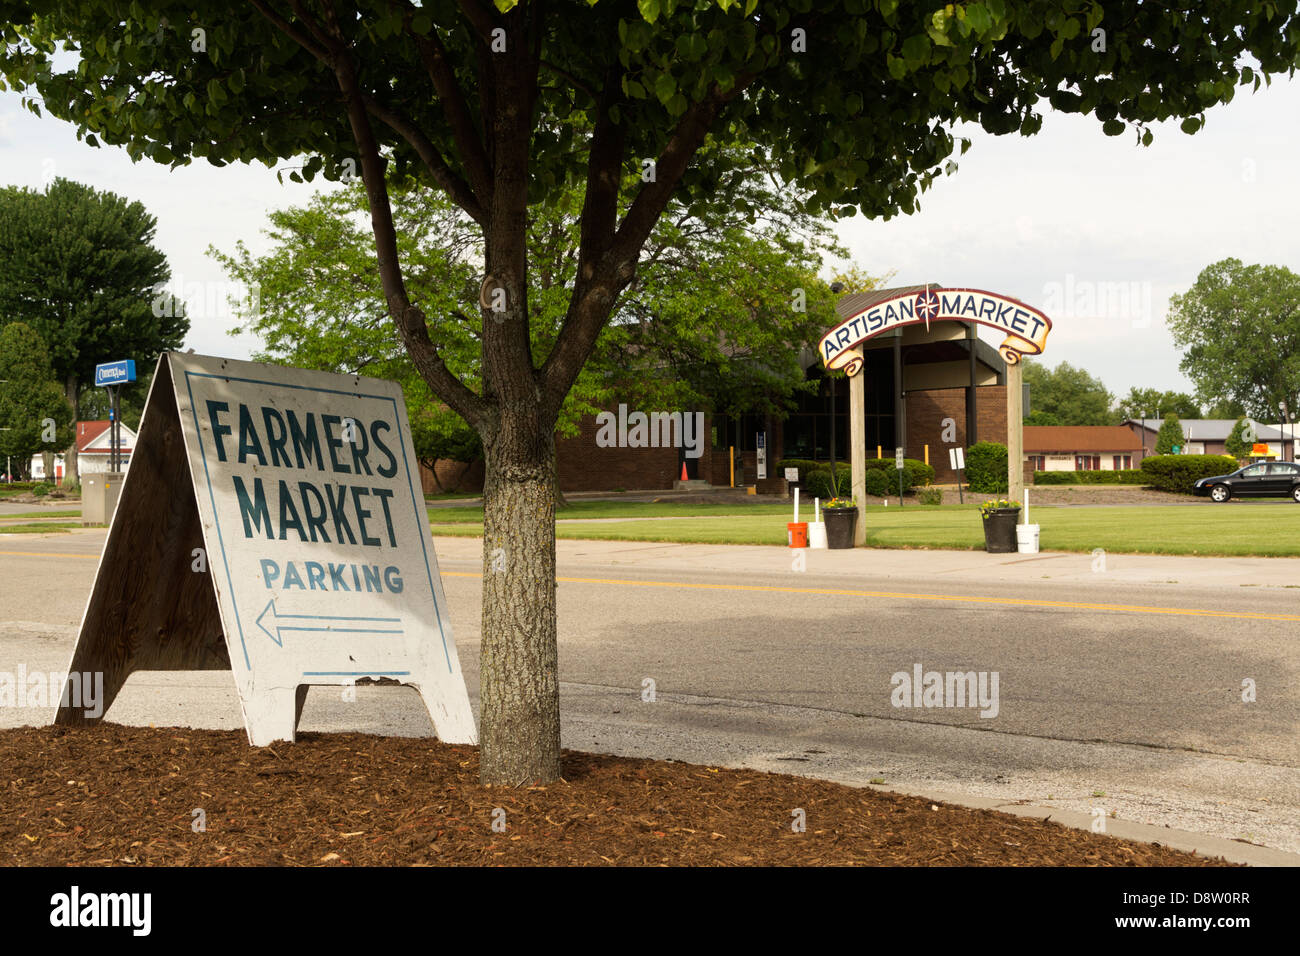 Parking sign pour Farmer's Market à Montague, Michigan. Arqué signe pour le marché de l'Artisan est de l'autre côté de la rue. Banque D'Images